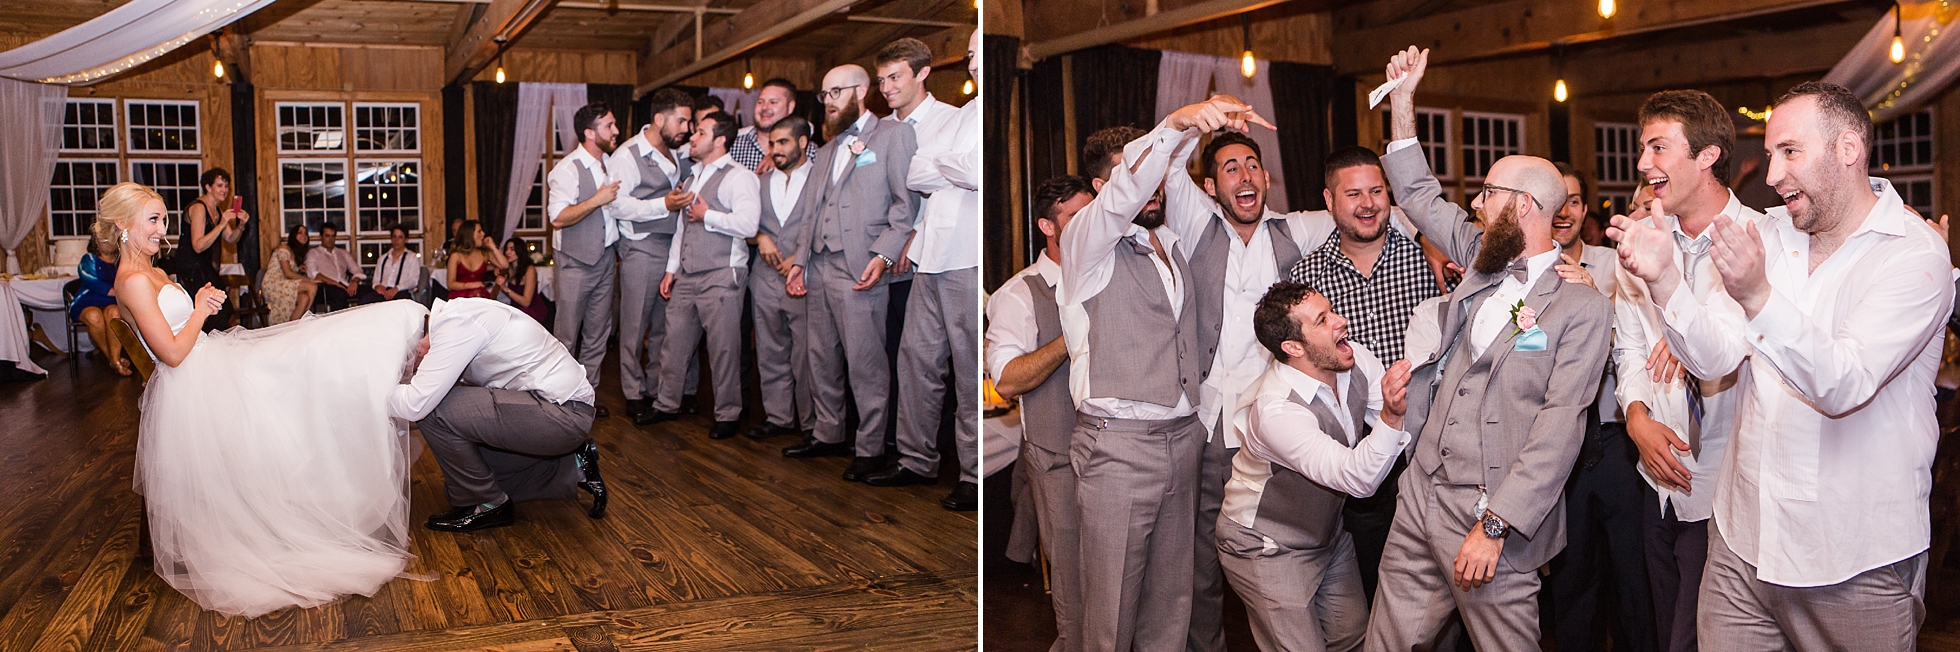 garter toss wedding